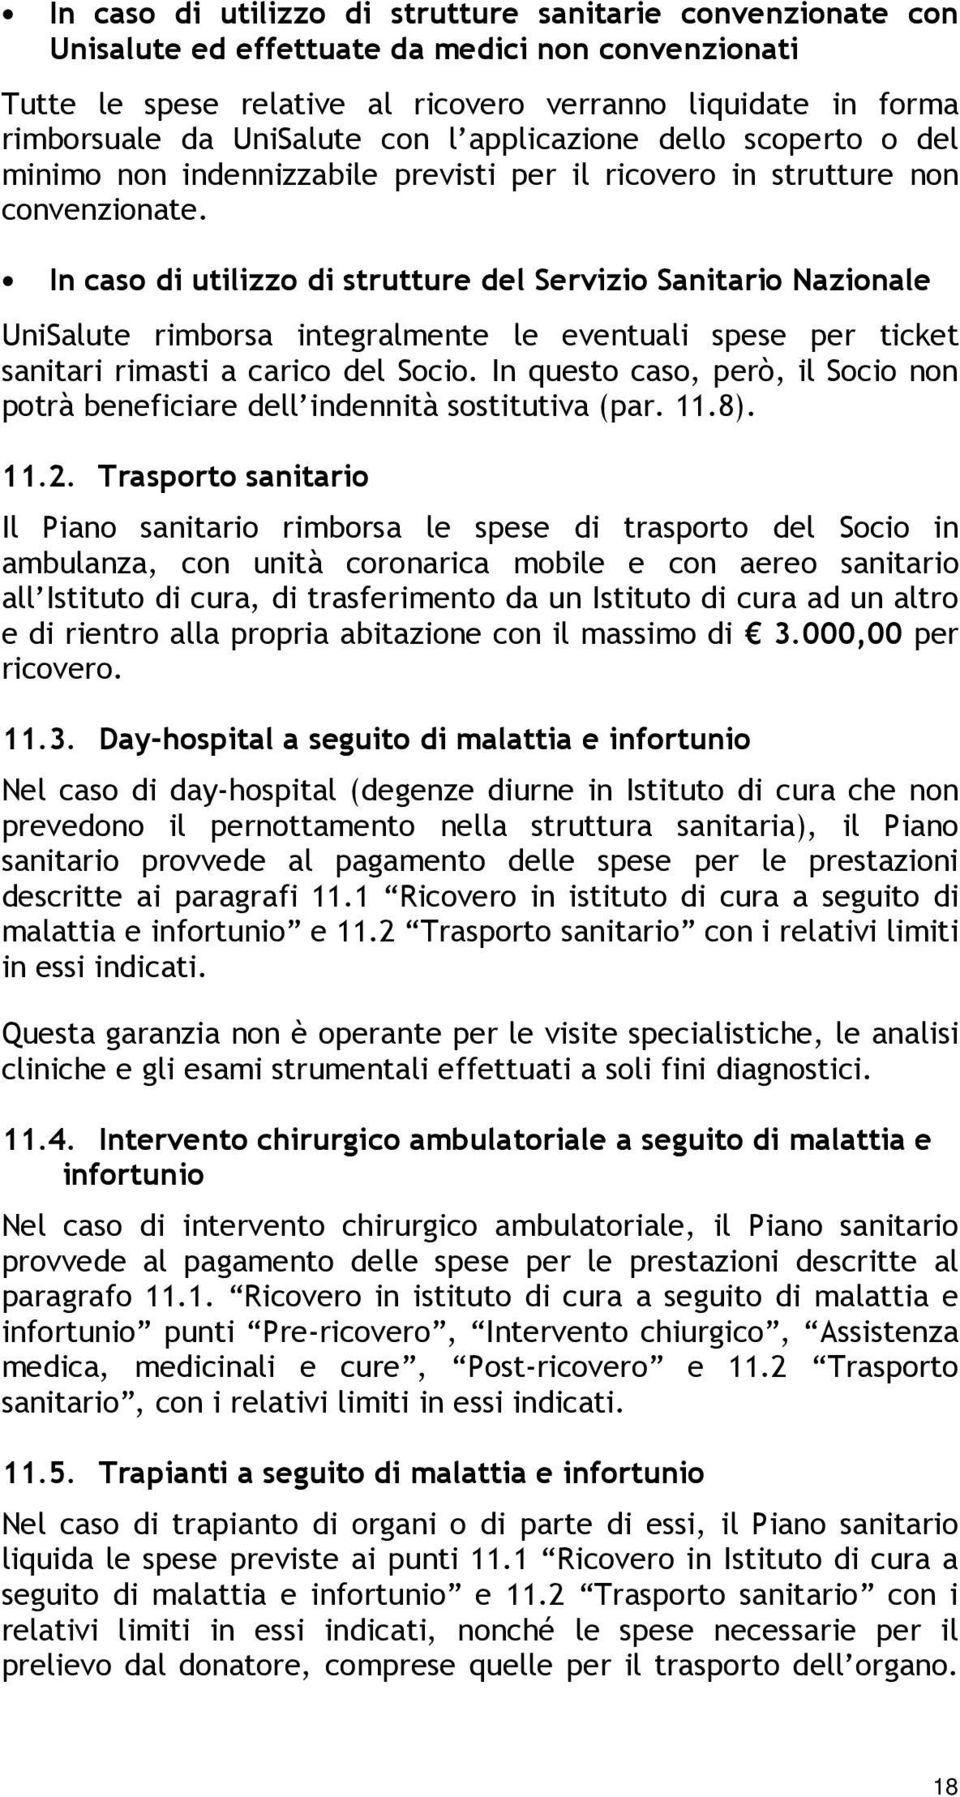 In caso di utilizzo di strutture del Servizio Sanitario Nazionale UniSalute rimborsa integralmente le eventuali spese per ticket sanitari rimasti a carico del Socio.